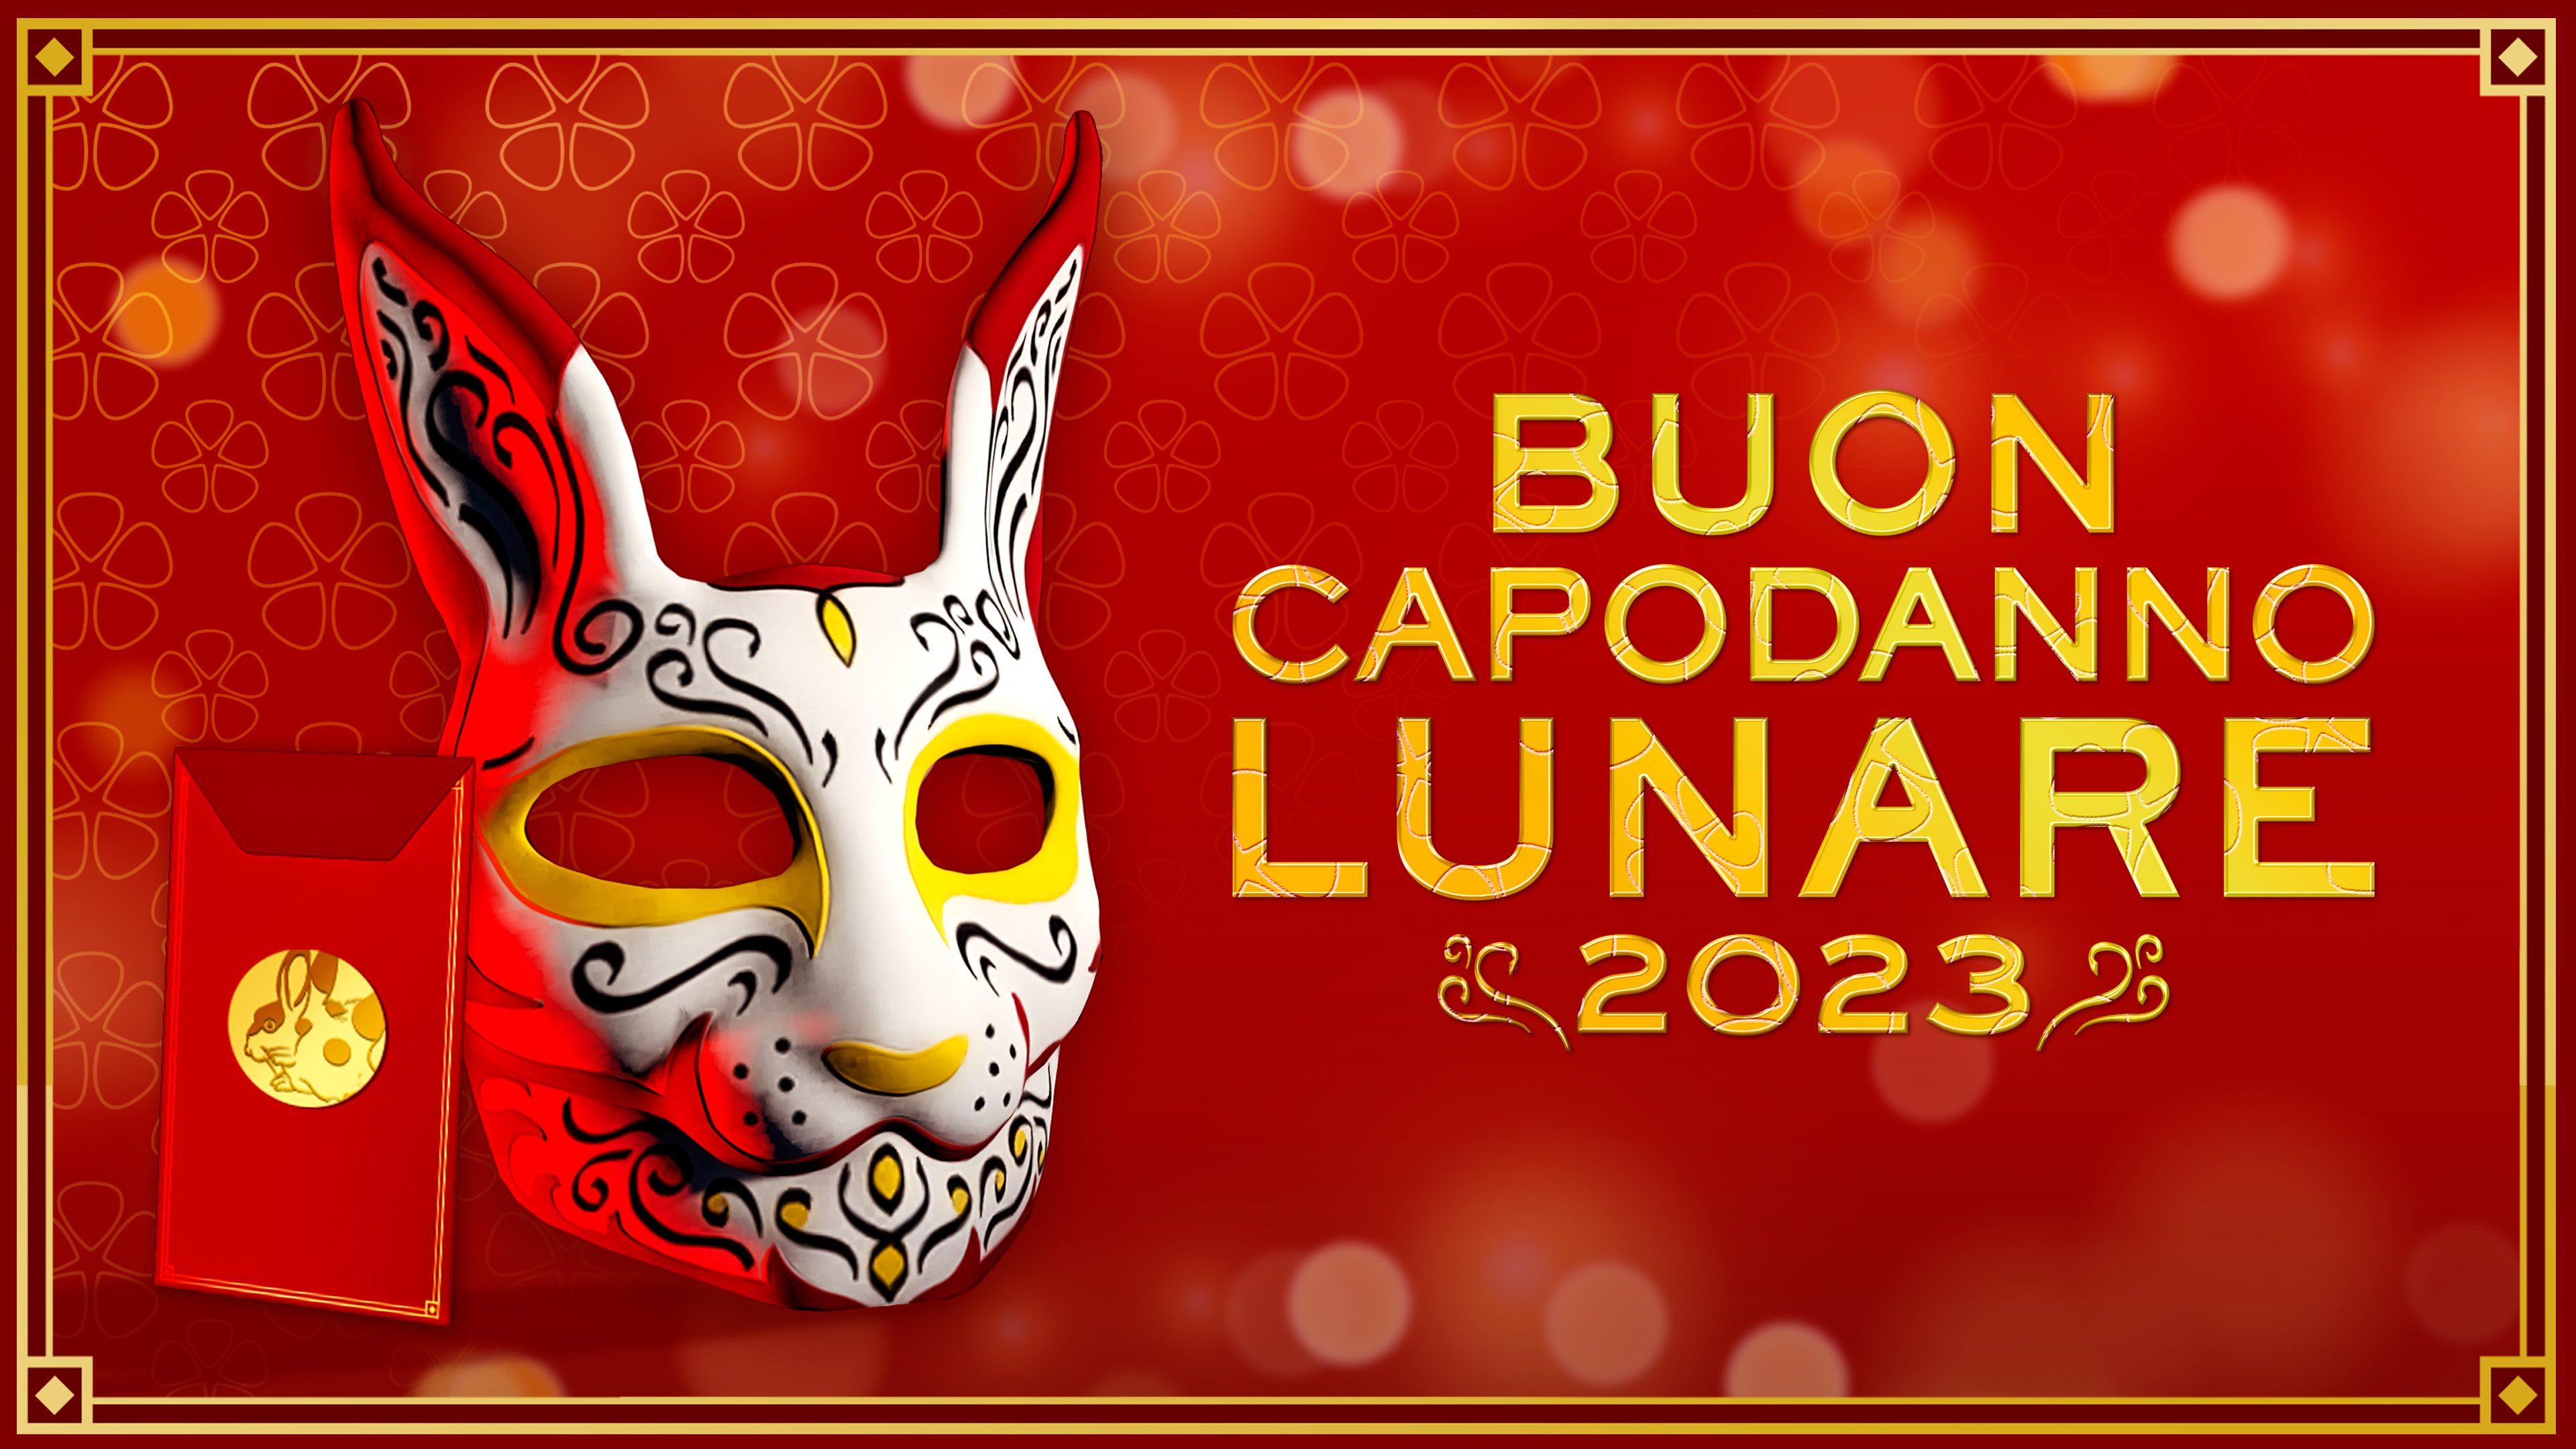 immagine della maschera coniglio dipinto tradizionale in GTA Online e il messaggio “Happy Lunar New Year 2023” (Buon Capodanno lunare 2023)